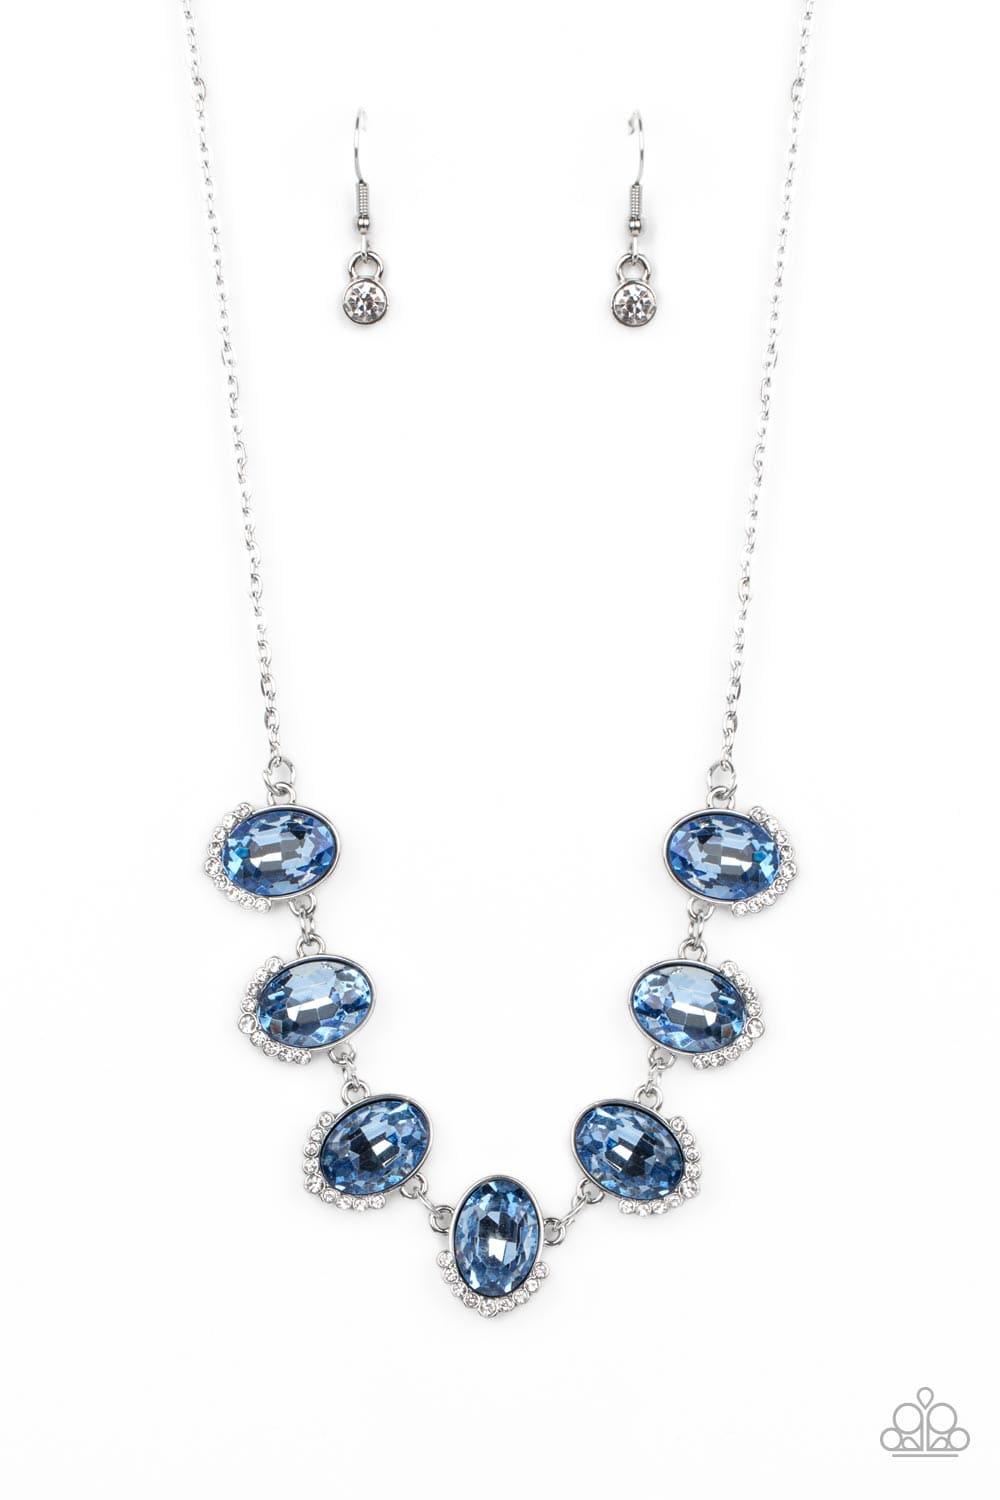 Paparazzi Accessories - Unleash Your Sparkle - Blue Necklace - Bling by JessieK